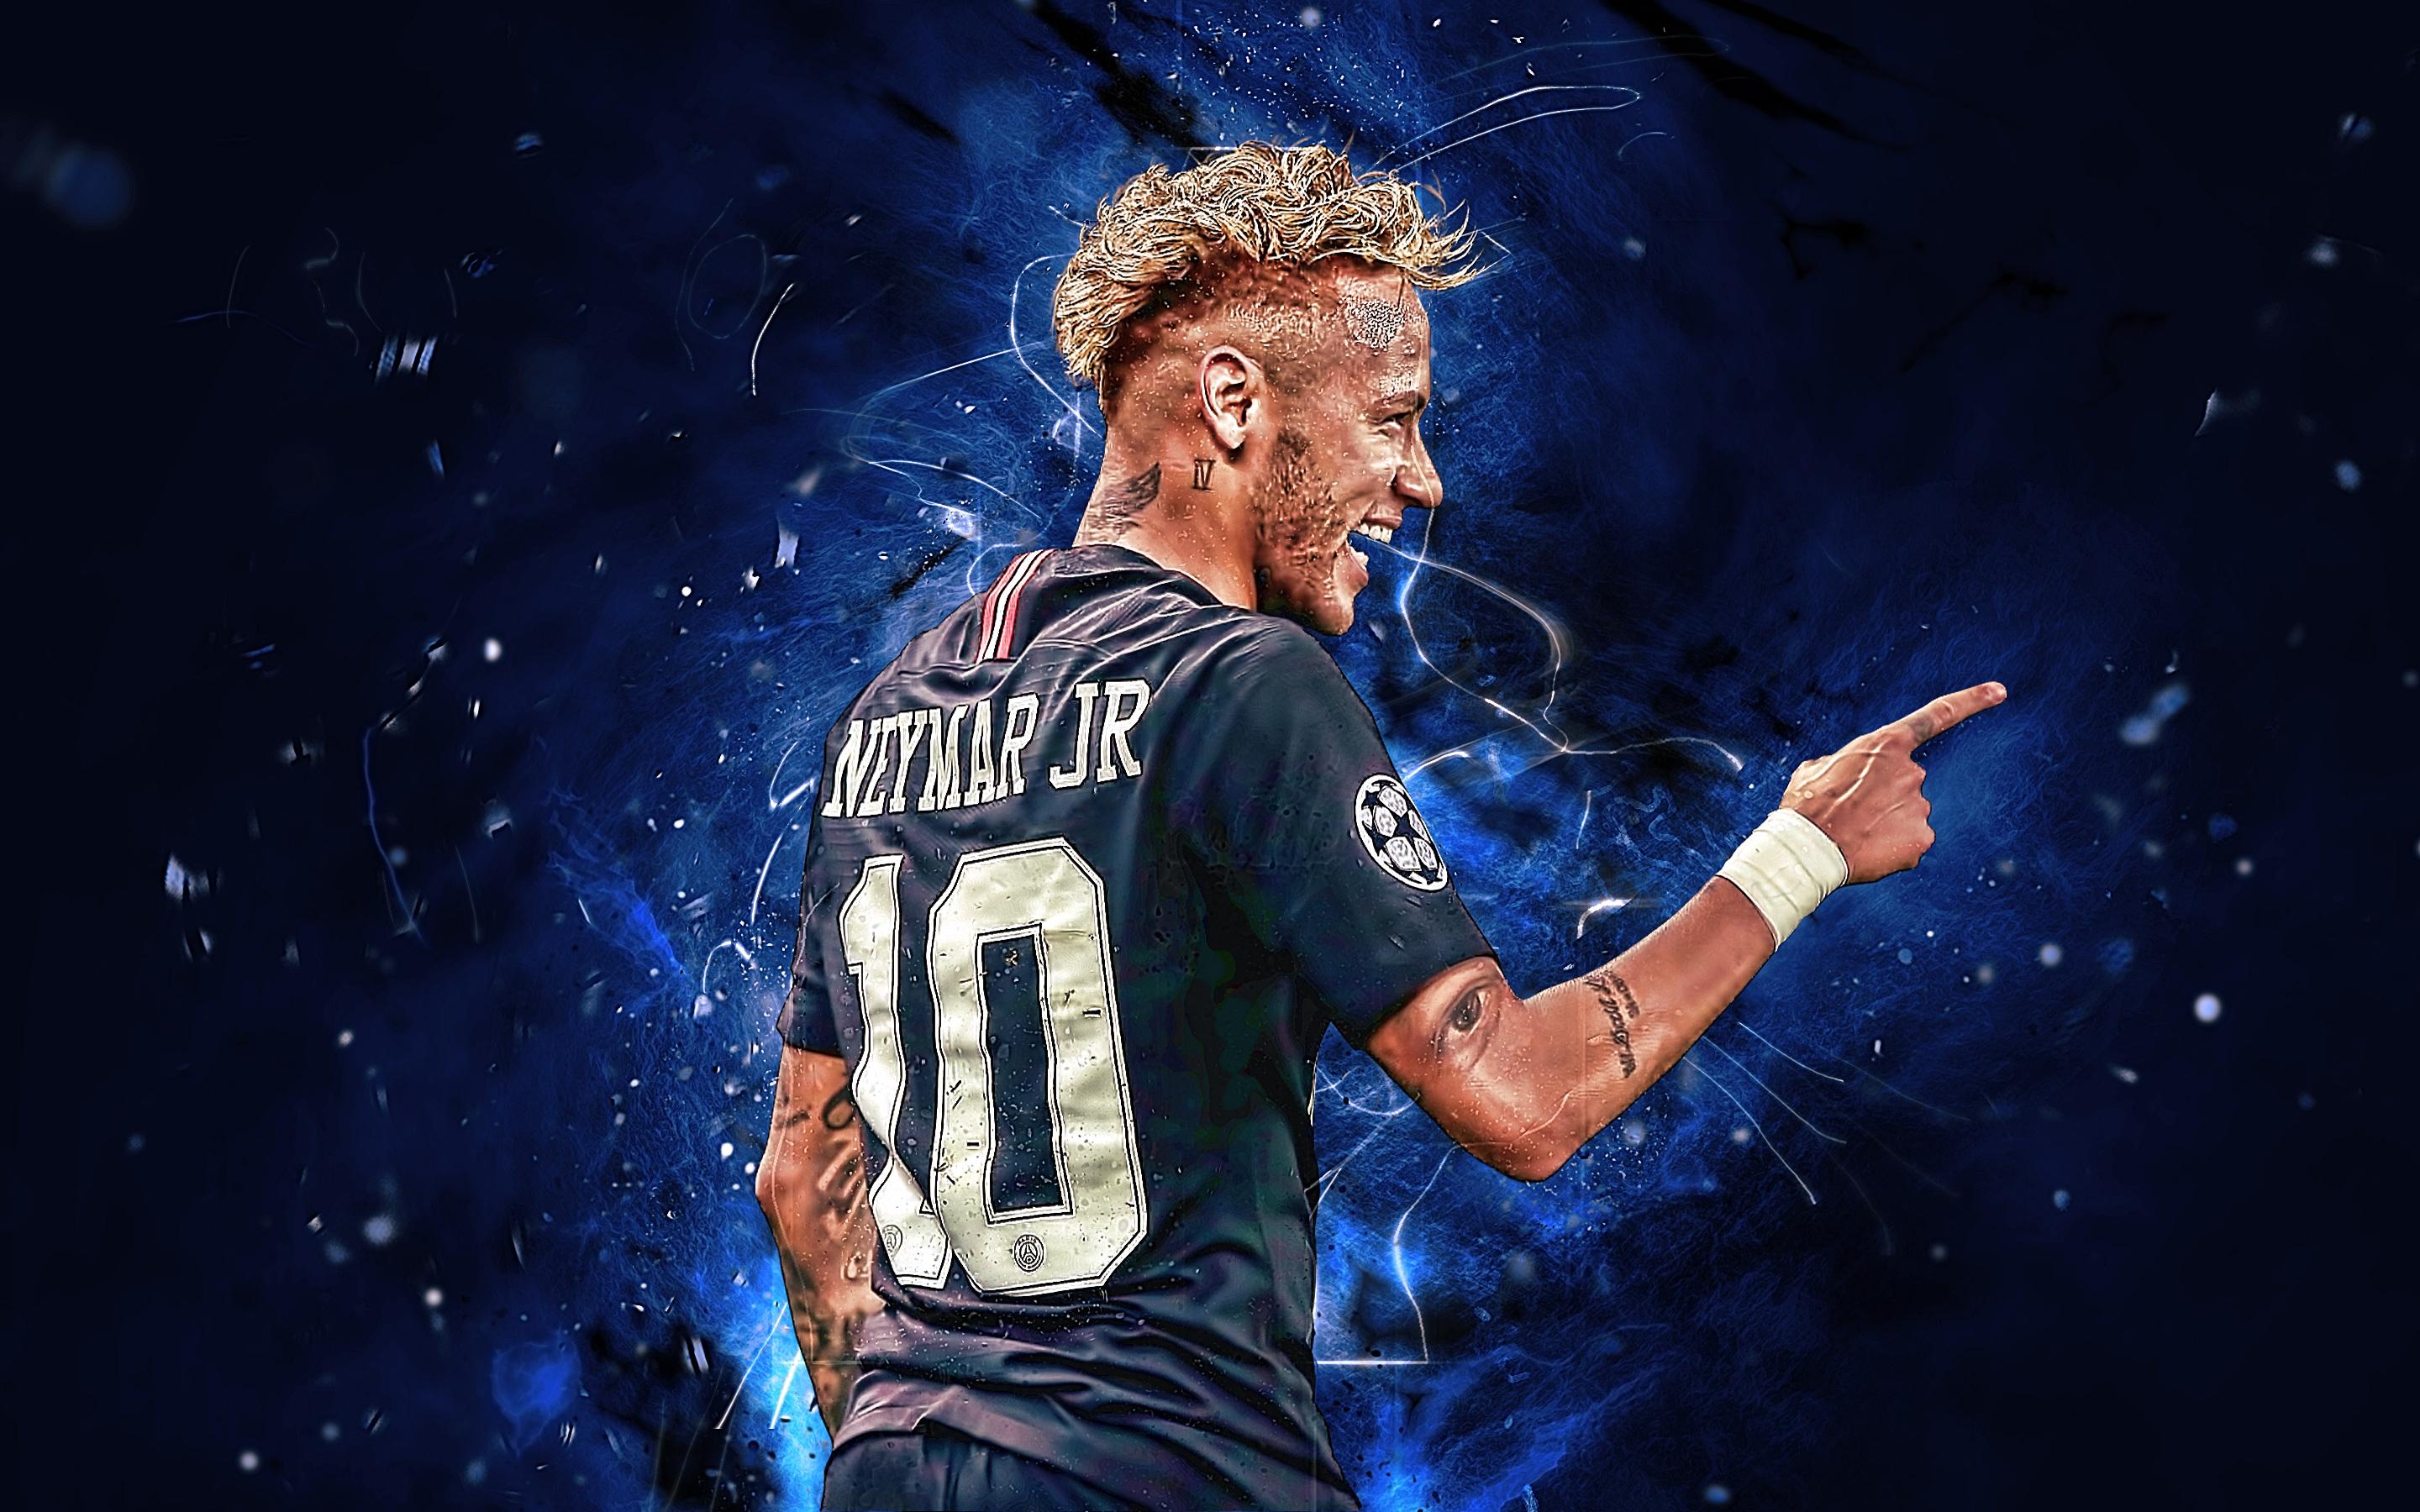 2880 x 1800 · jpeg - Neymar Jr - PSG HD Wallpaper | Achtergrond | 2880x1800 | ID:962076 ...